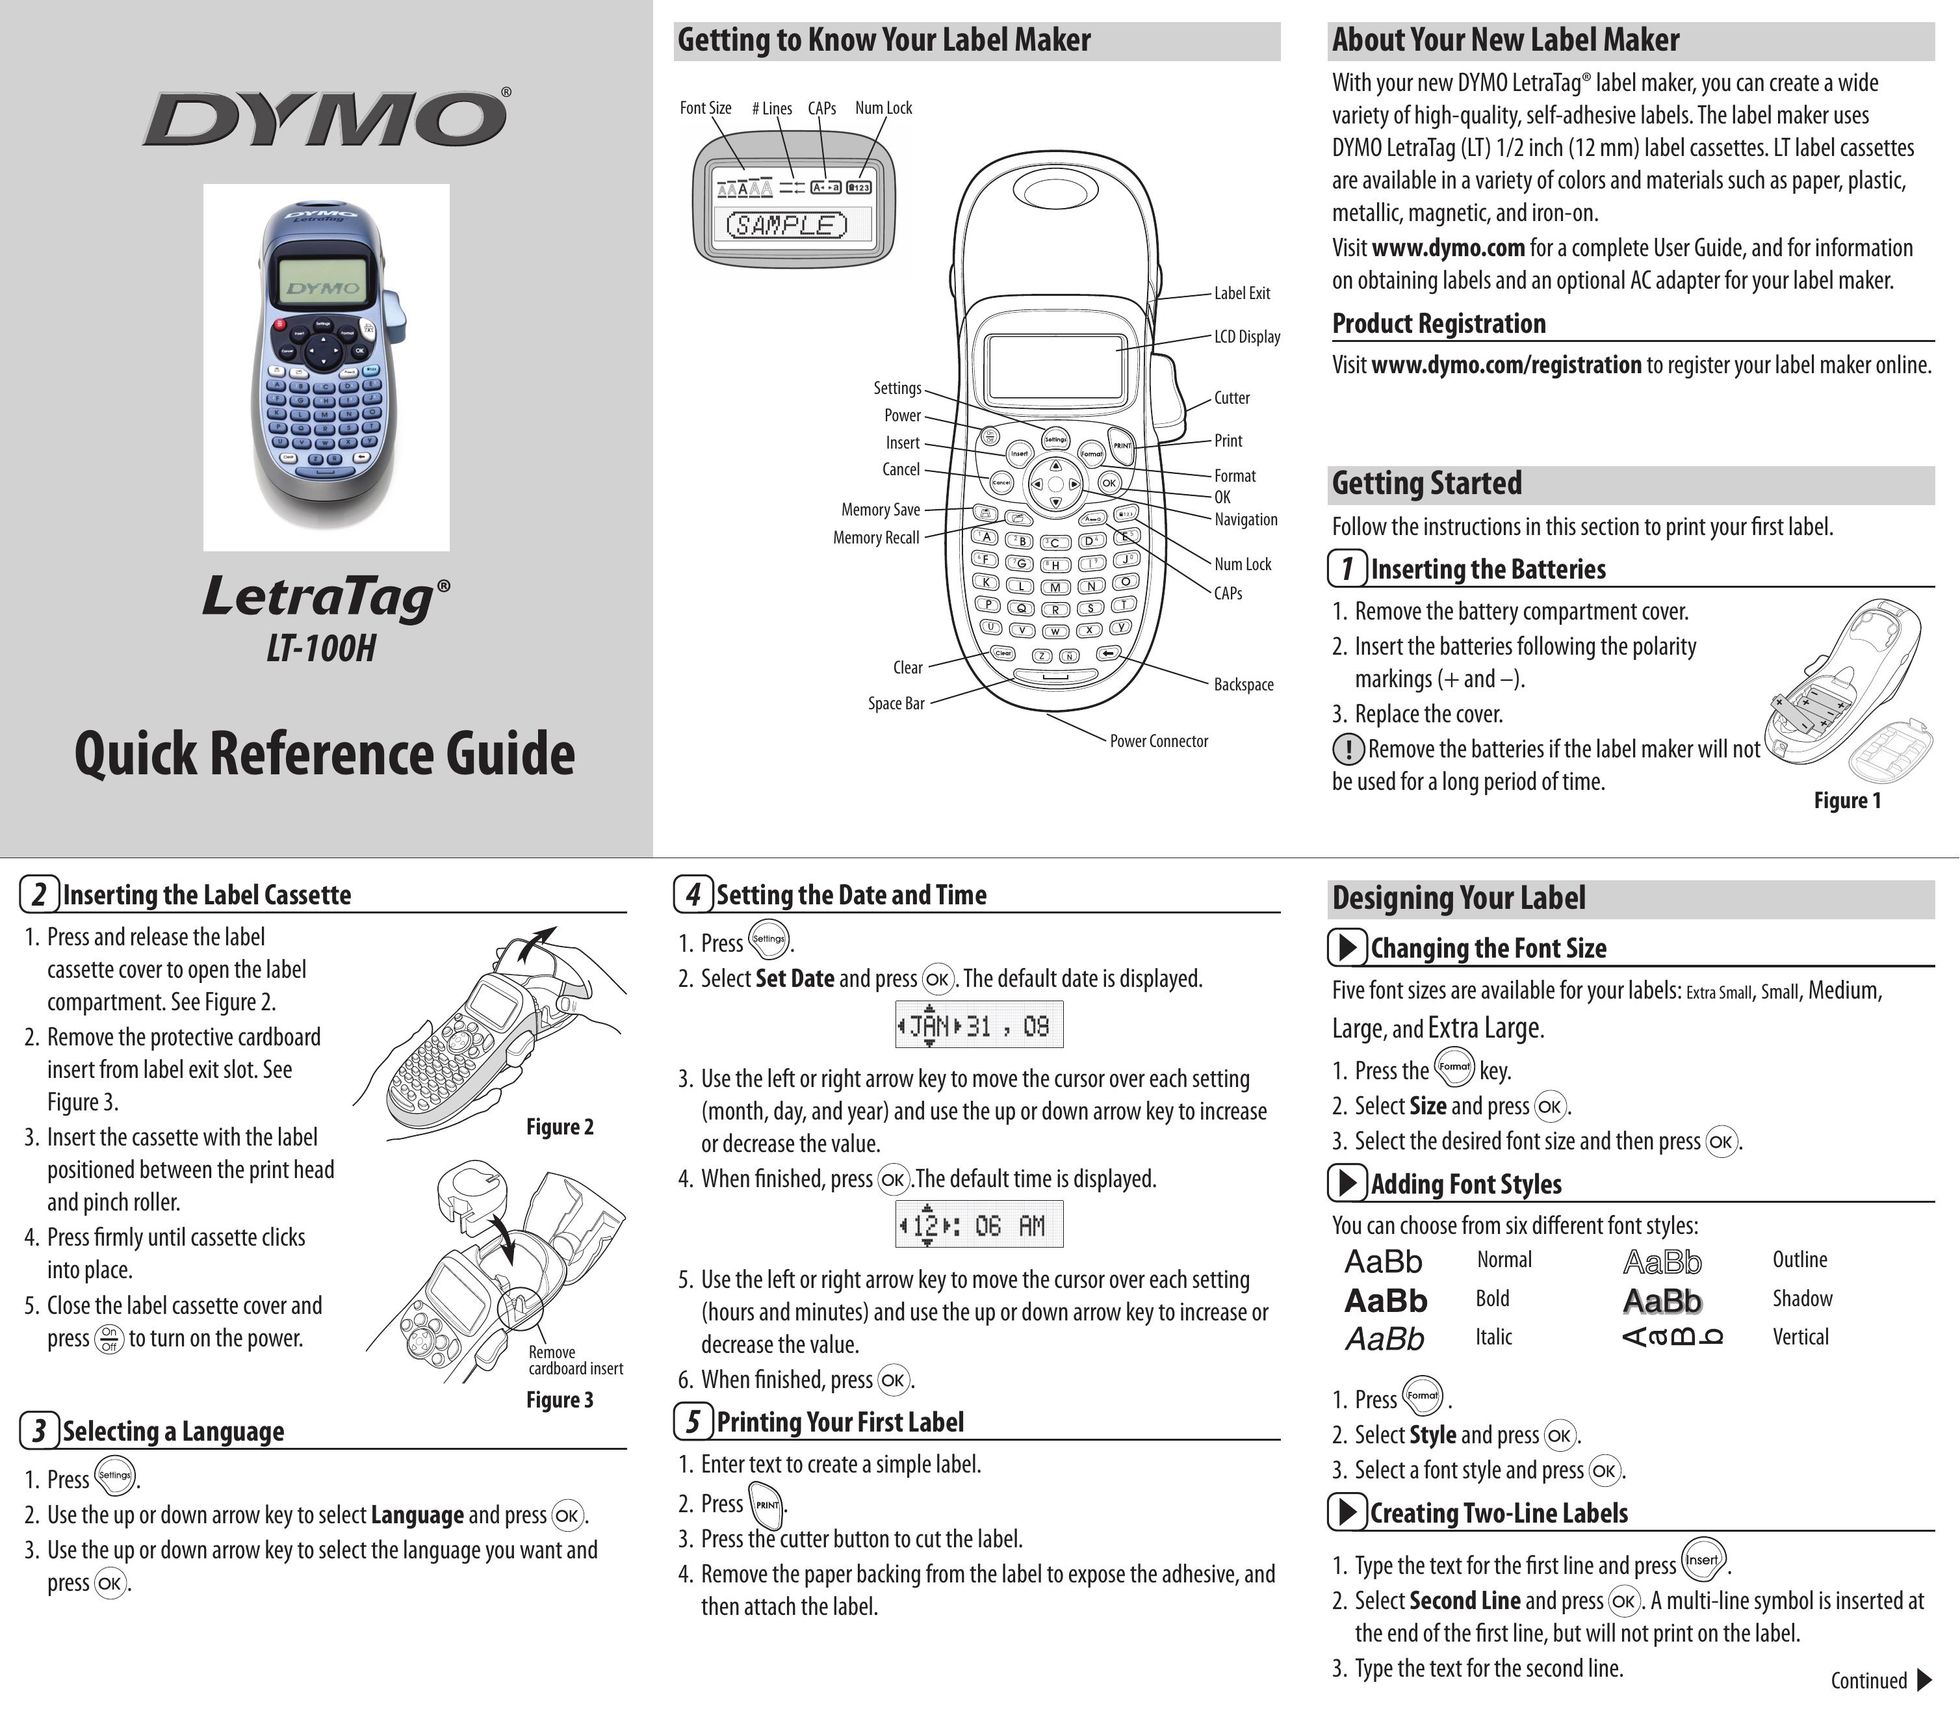 Dymo LT-100H Label Maker User Manual